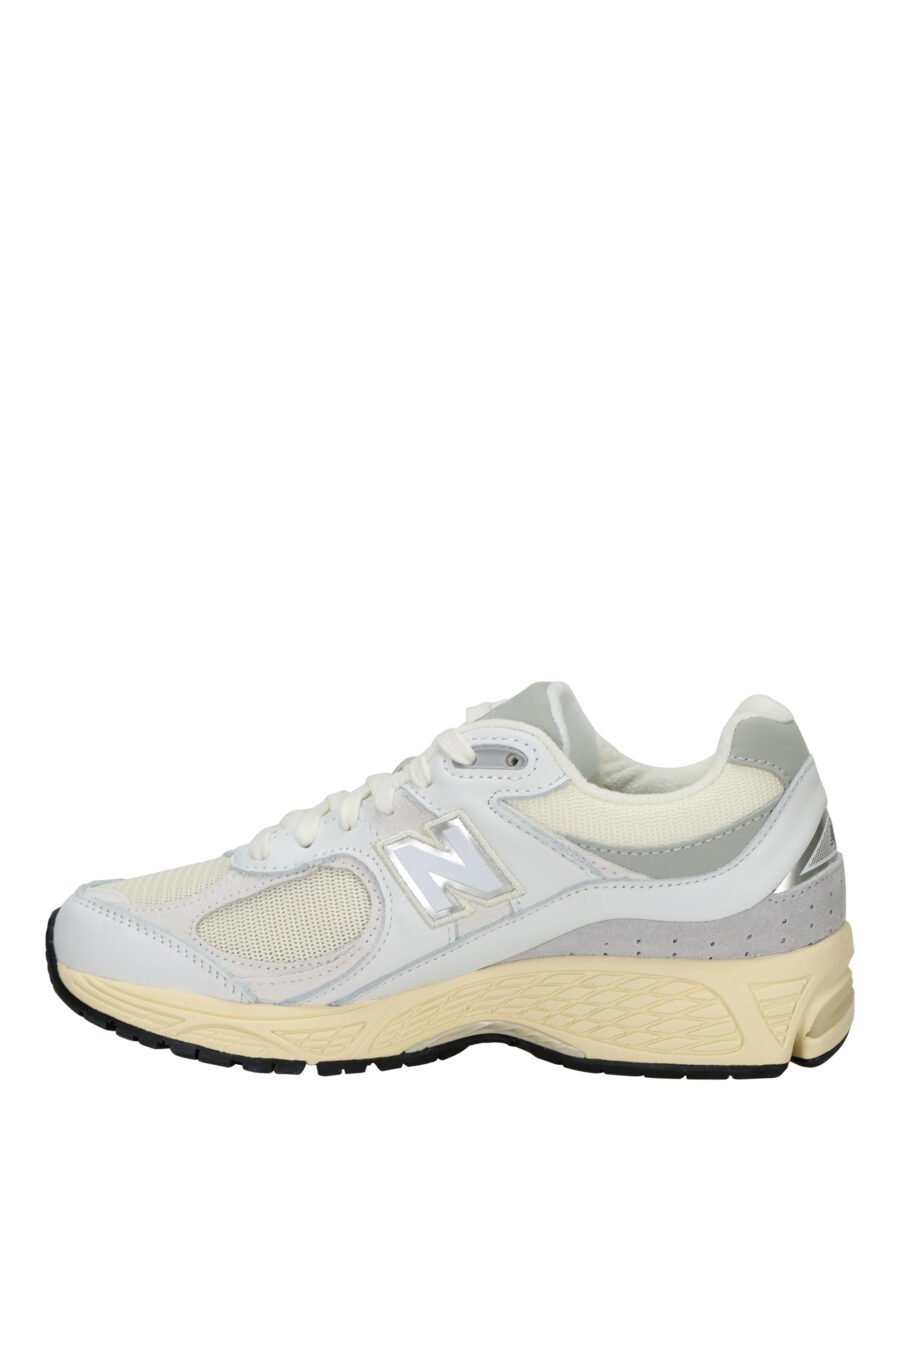 Zapatillas grises mix con blanco y suela beige "2002R" con logo "N" - 197375250014 2